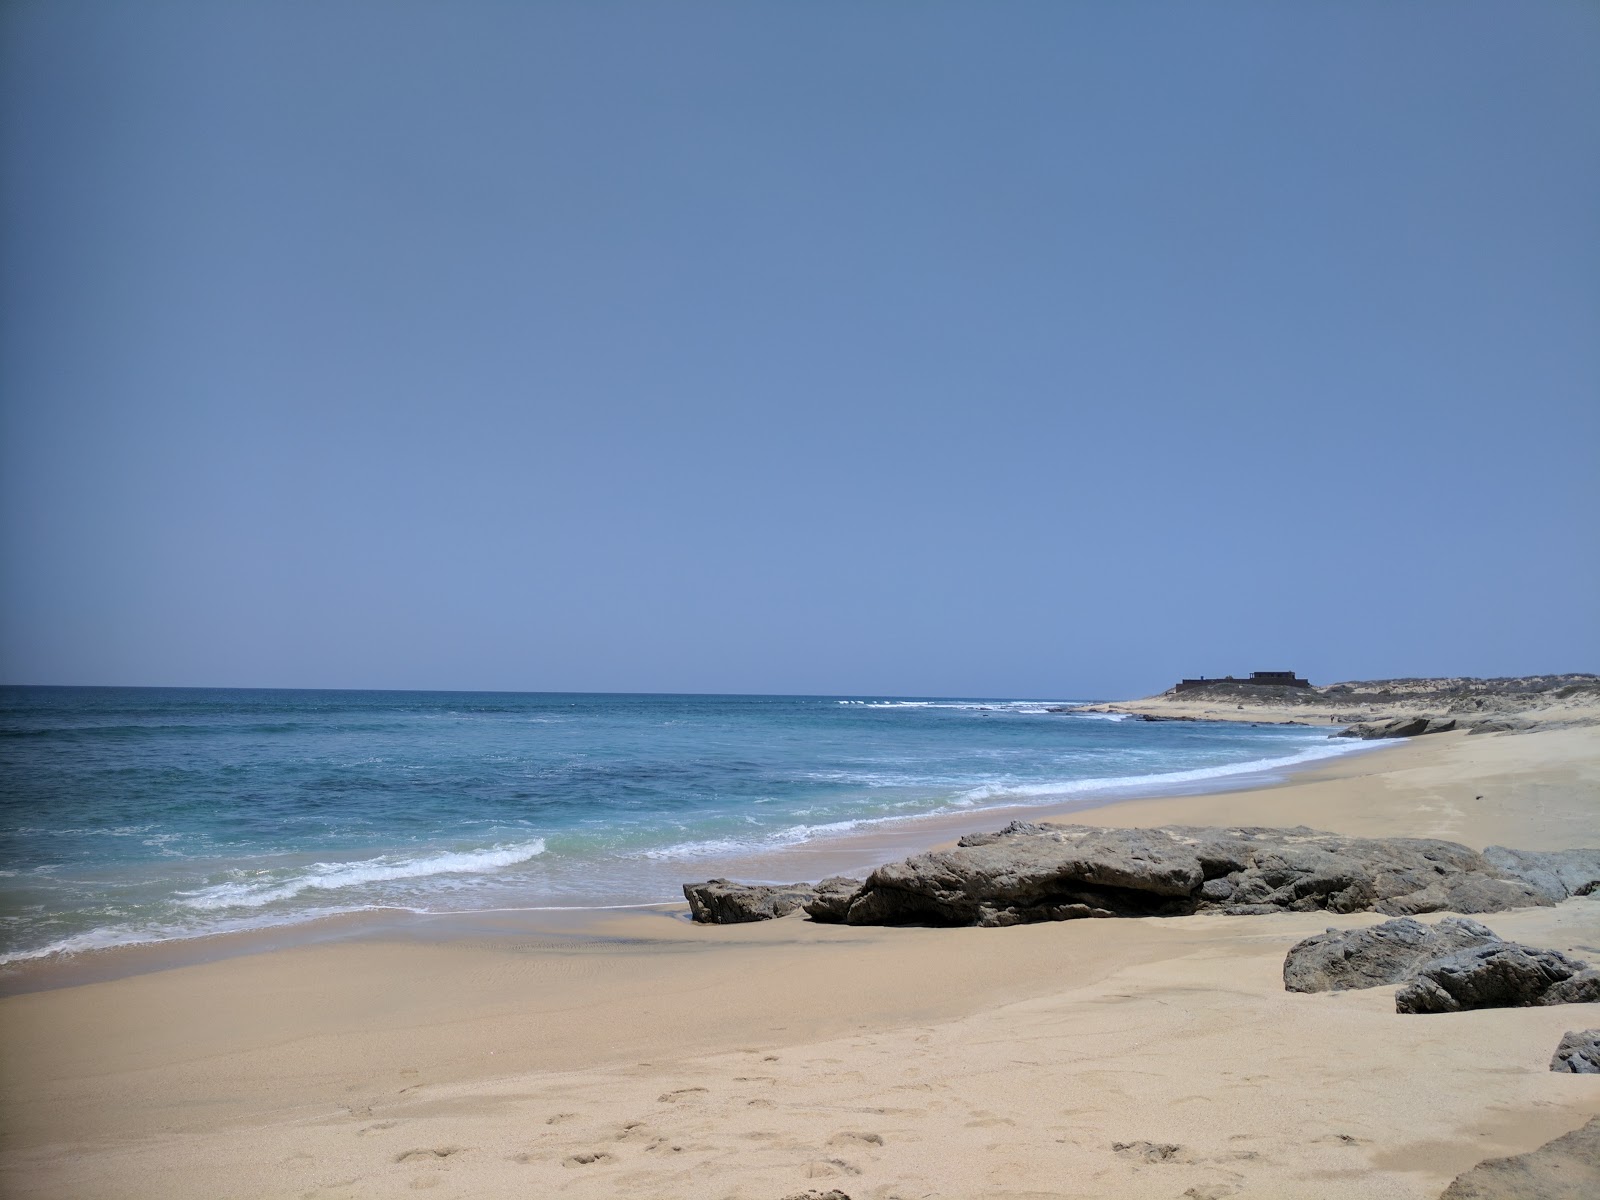 Playa Santa Agueda'in fotoğrafı parlak kum yüzey ile